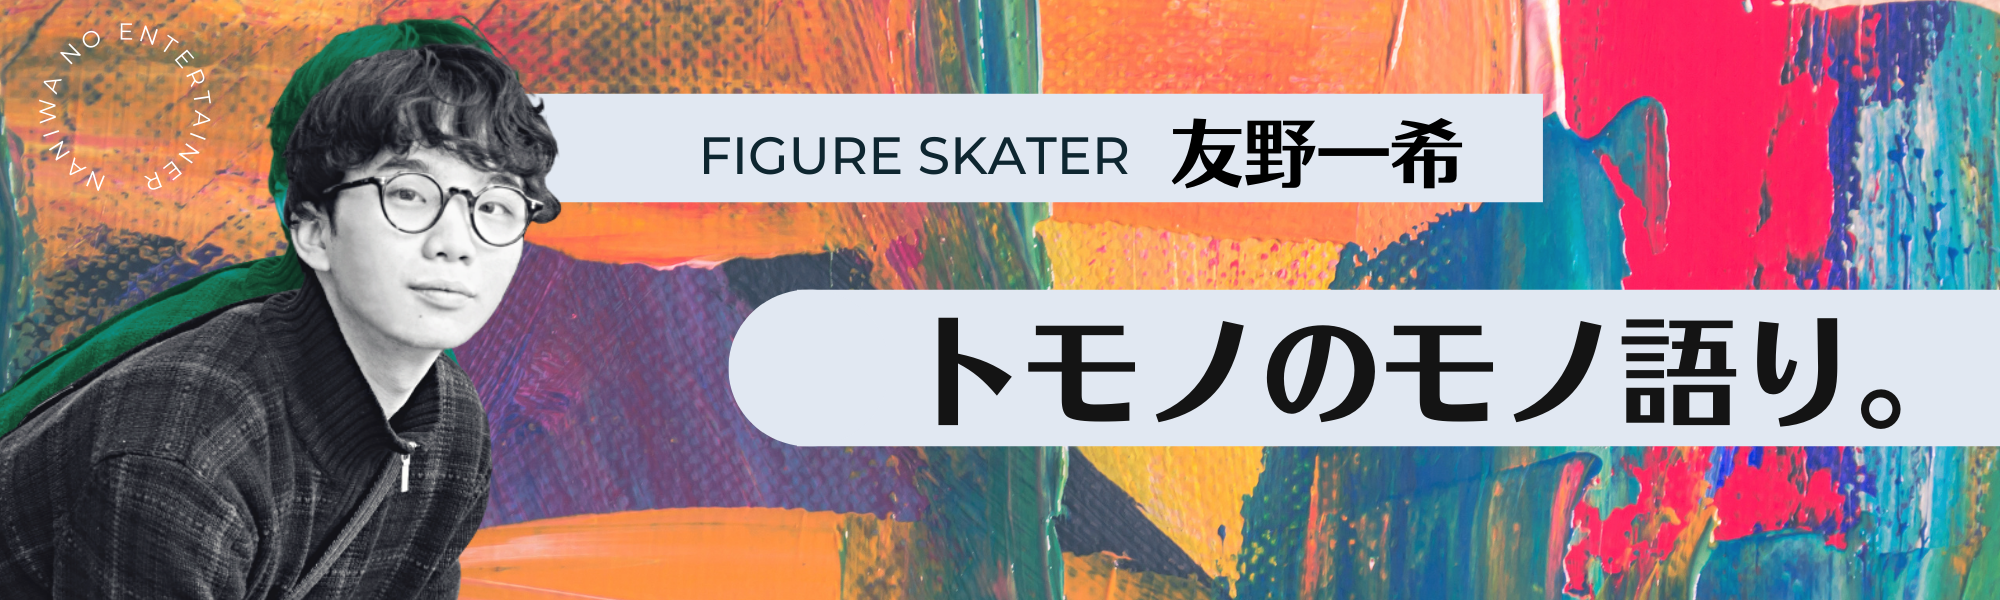 フィギュアスケーター友野一希連載「トモノのモノ語り。」